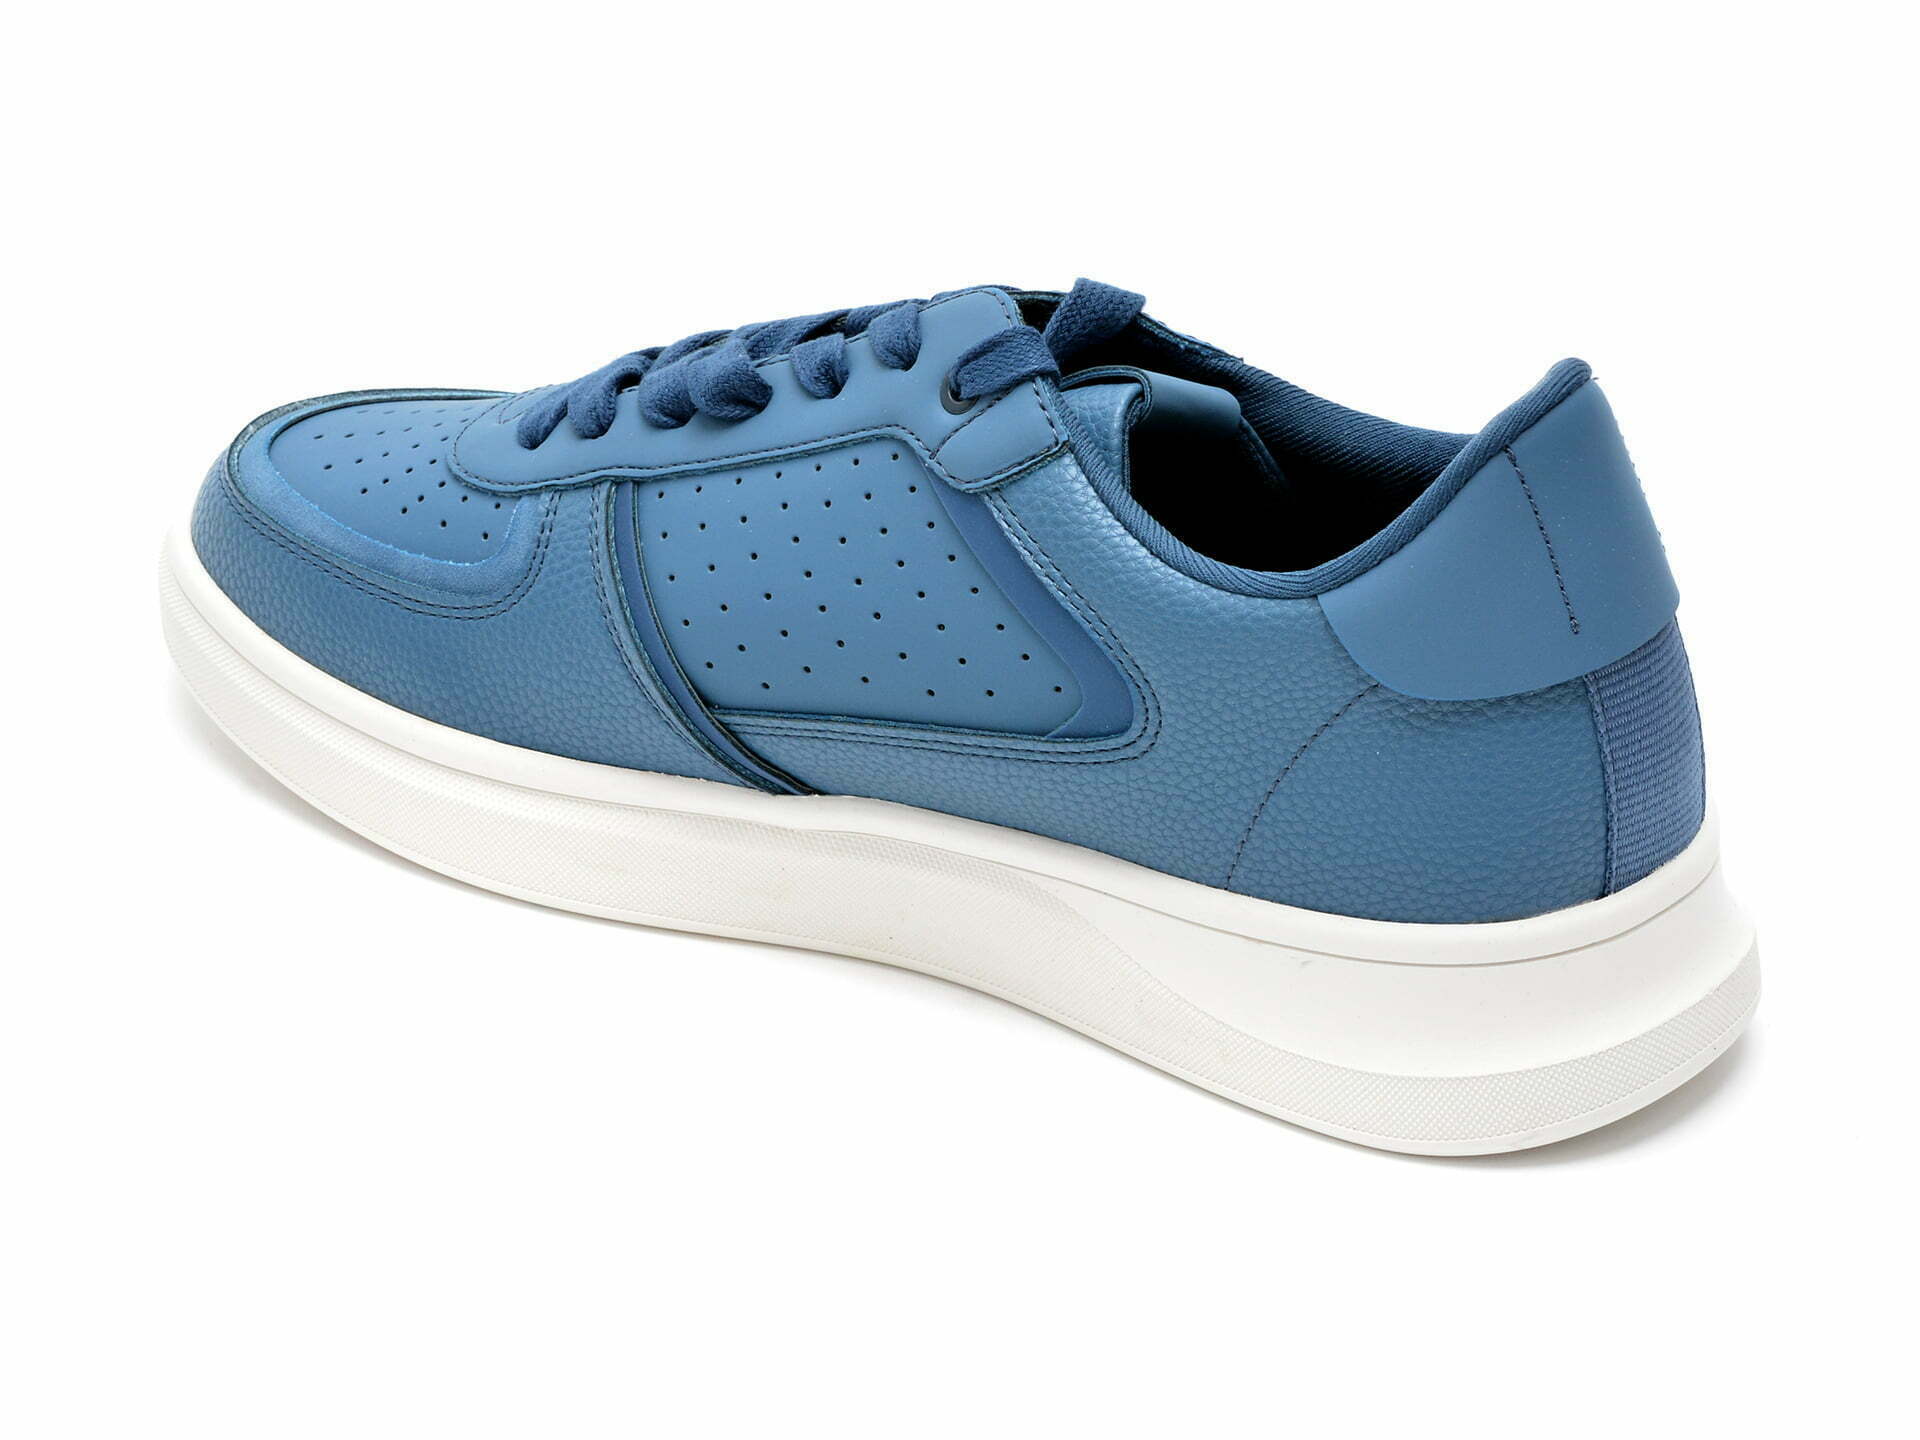 Comandă Încălțăminte Damă, la Reducere  Pantofi sport ALDO bleumarin, DRISHTIA420, din piele ecologica Branduri de top ✓